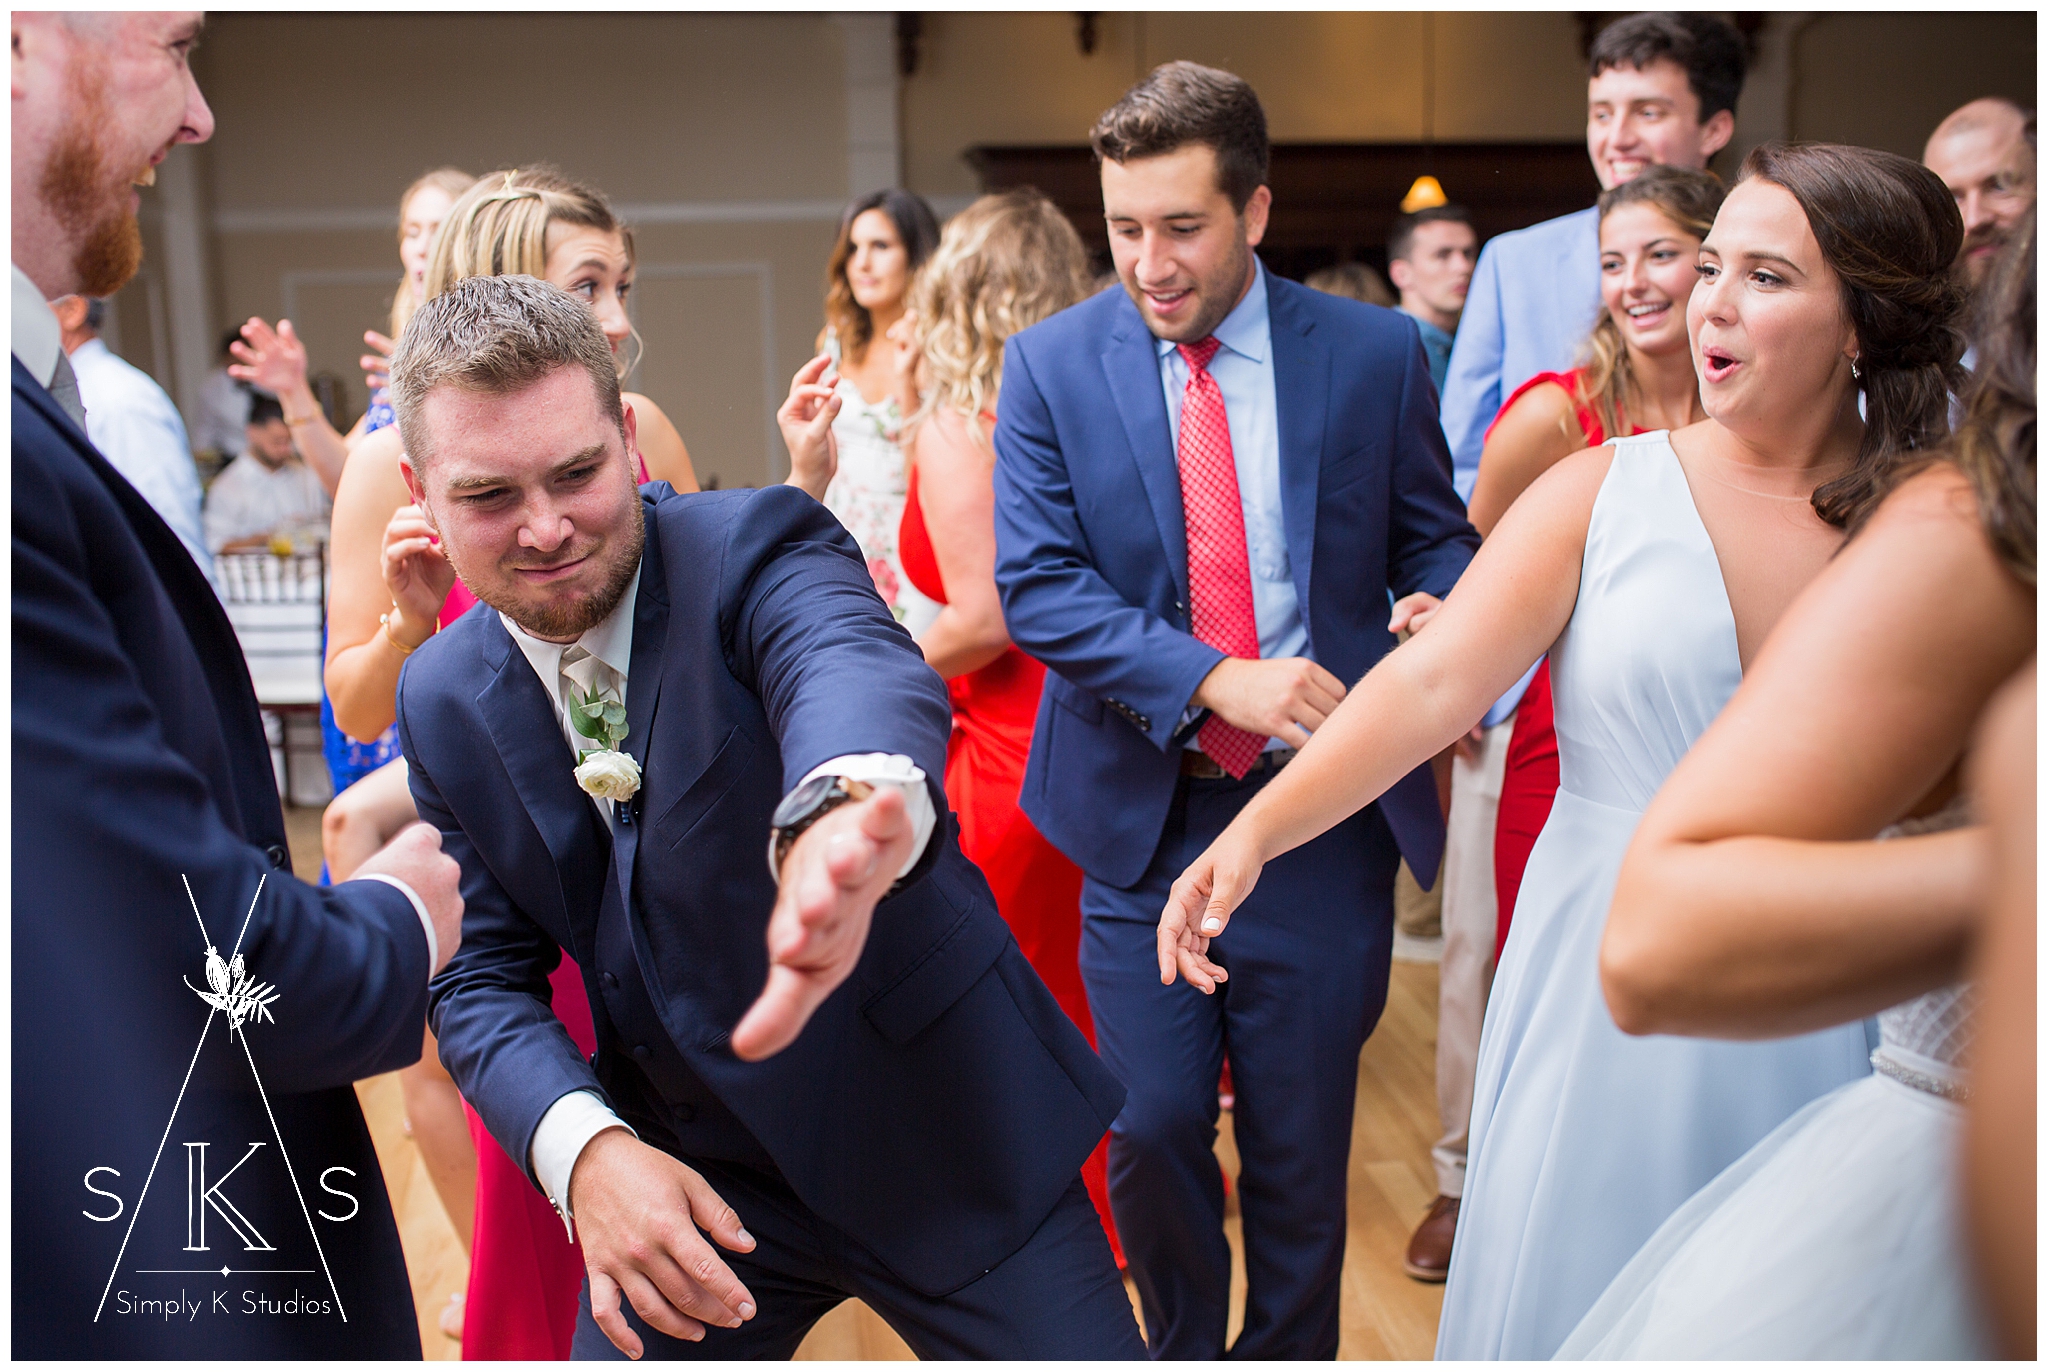 120 Groom Dancing at a Wedding.jpg